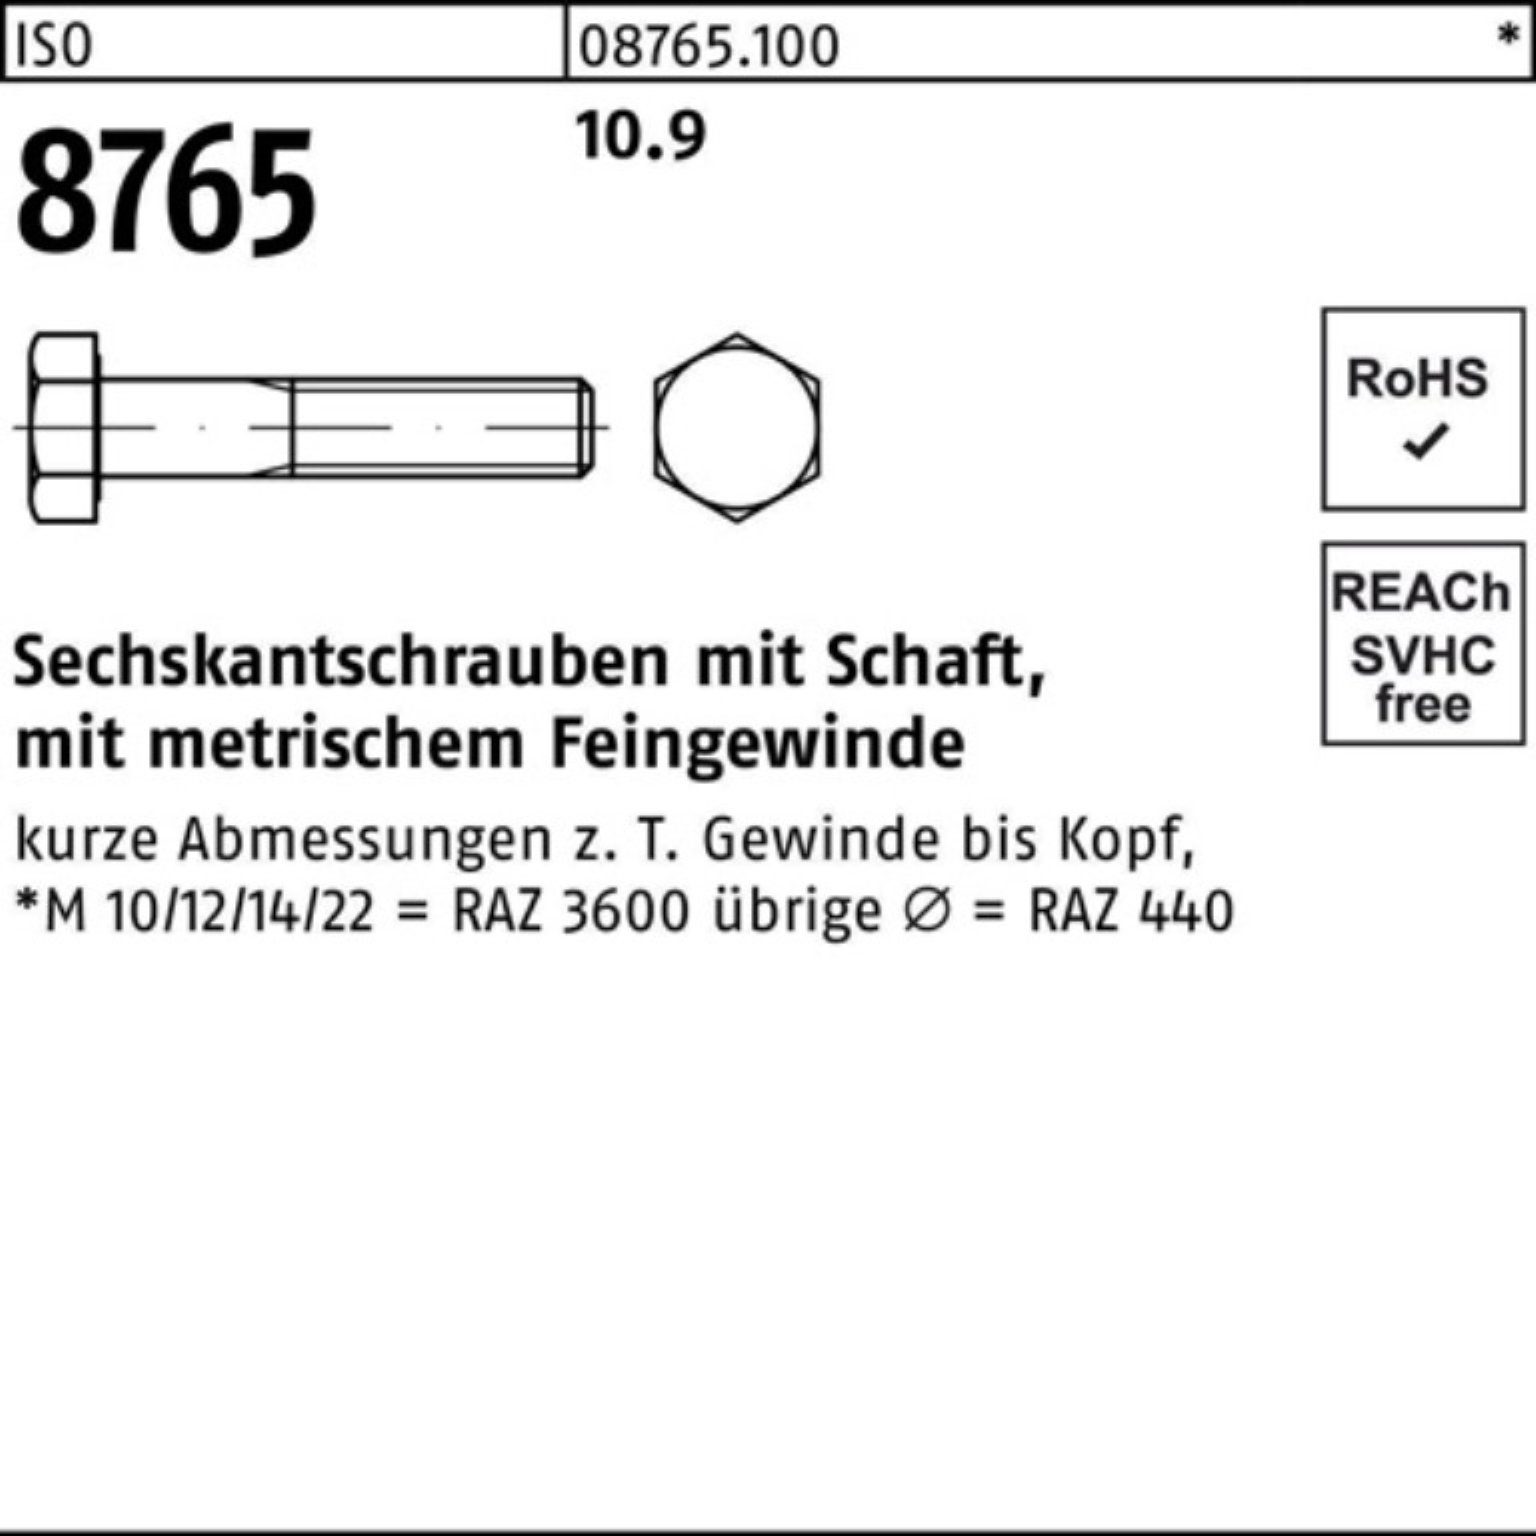 Schaft Reyher ISO Sechskantschraube Sechskantschraube 8765 St 10.9 50 Pack 100 100er M10x1,25x